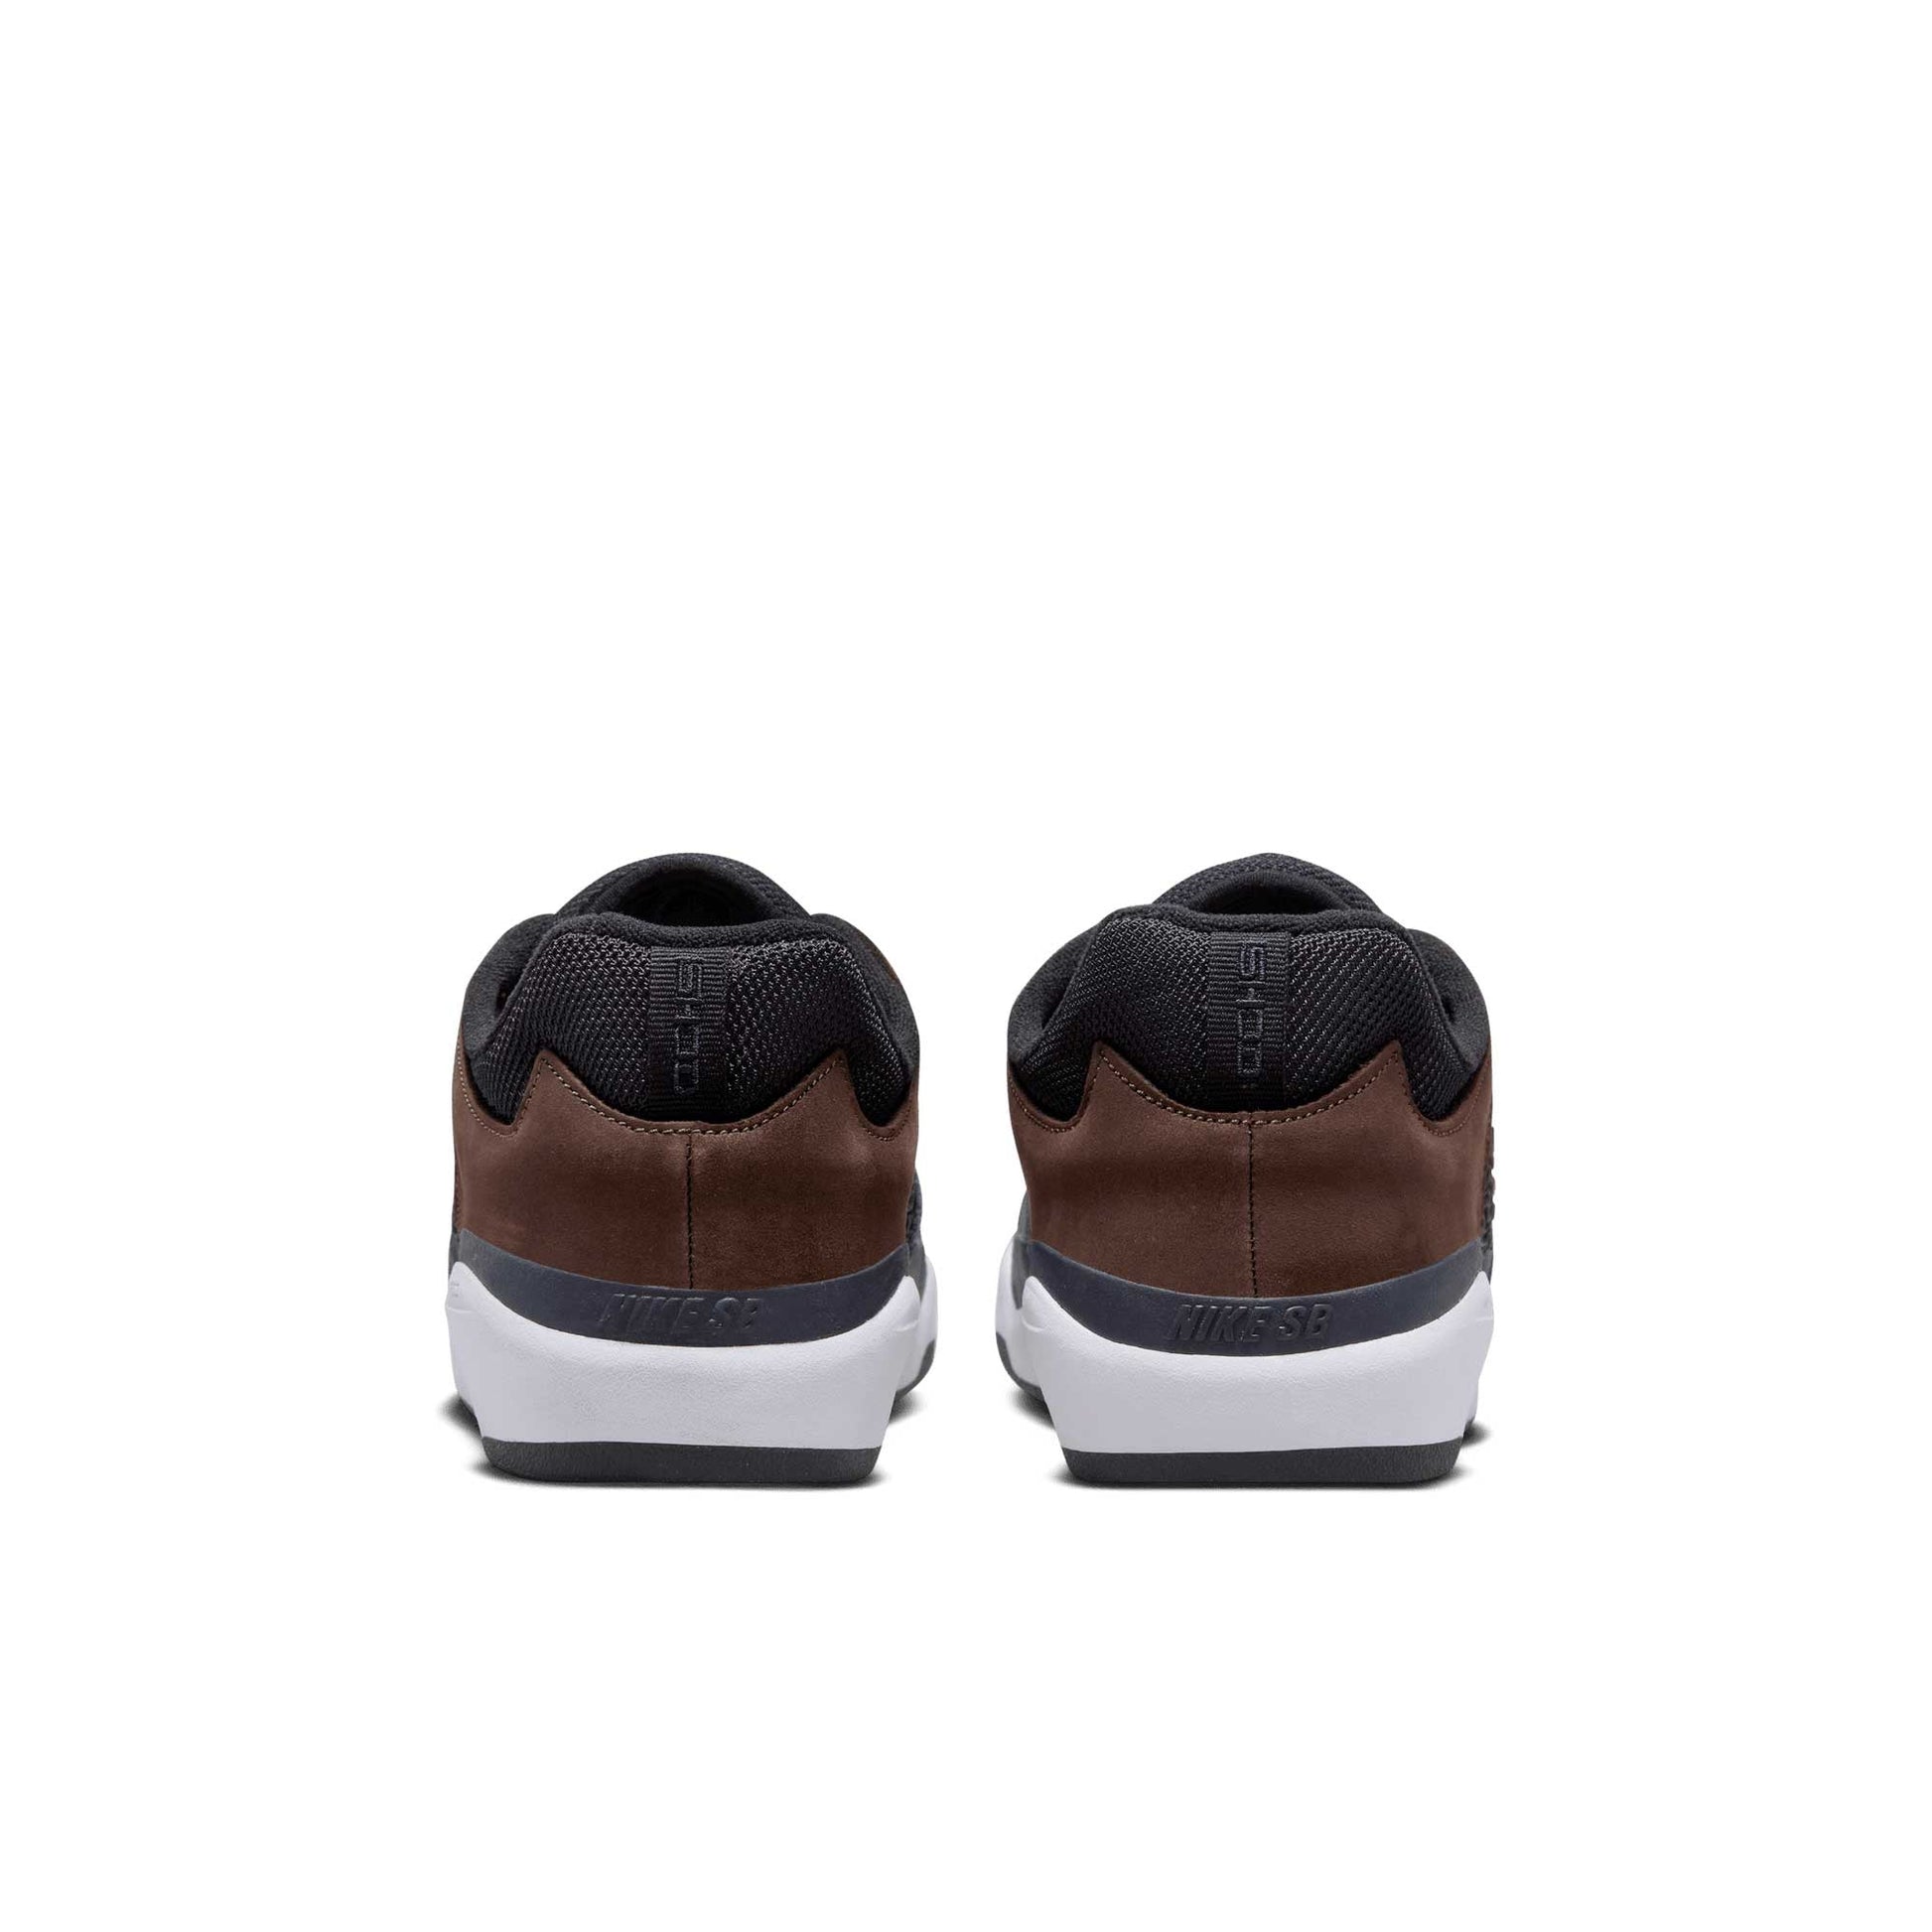 Nike SB Ishod Premium, baroque brown/obsidian-black - Tiki Room Skateboards - 4